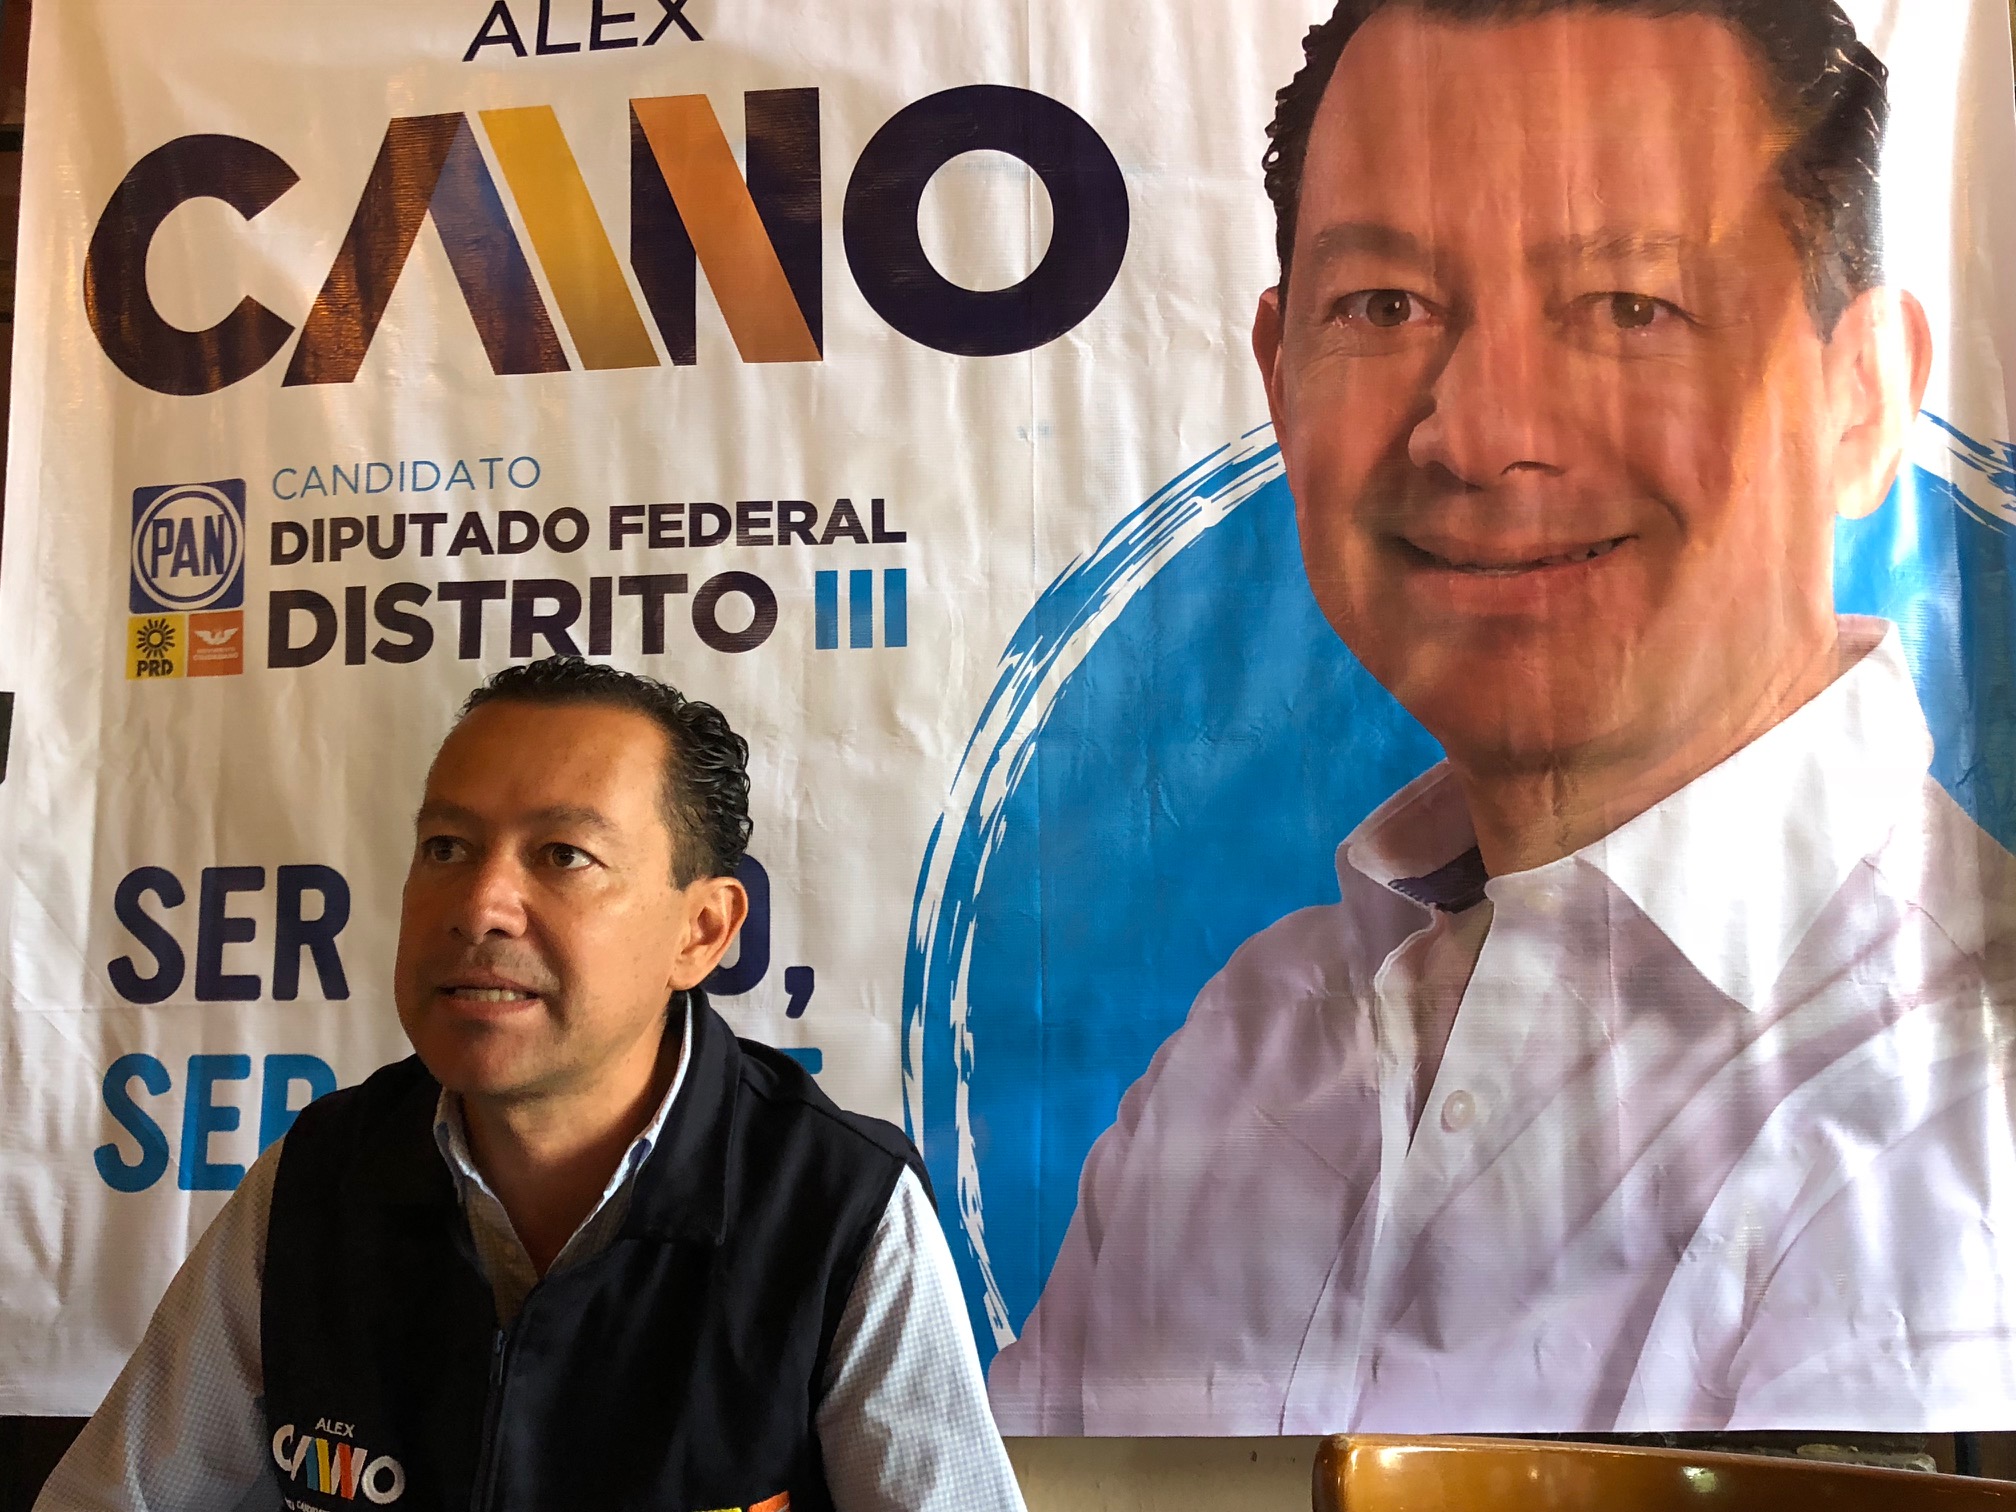  Propone Alex Cano reformar leyes de salud para atender necesidades de la ciudadanía